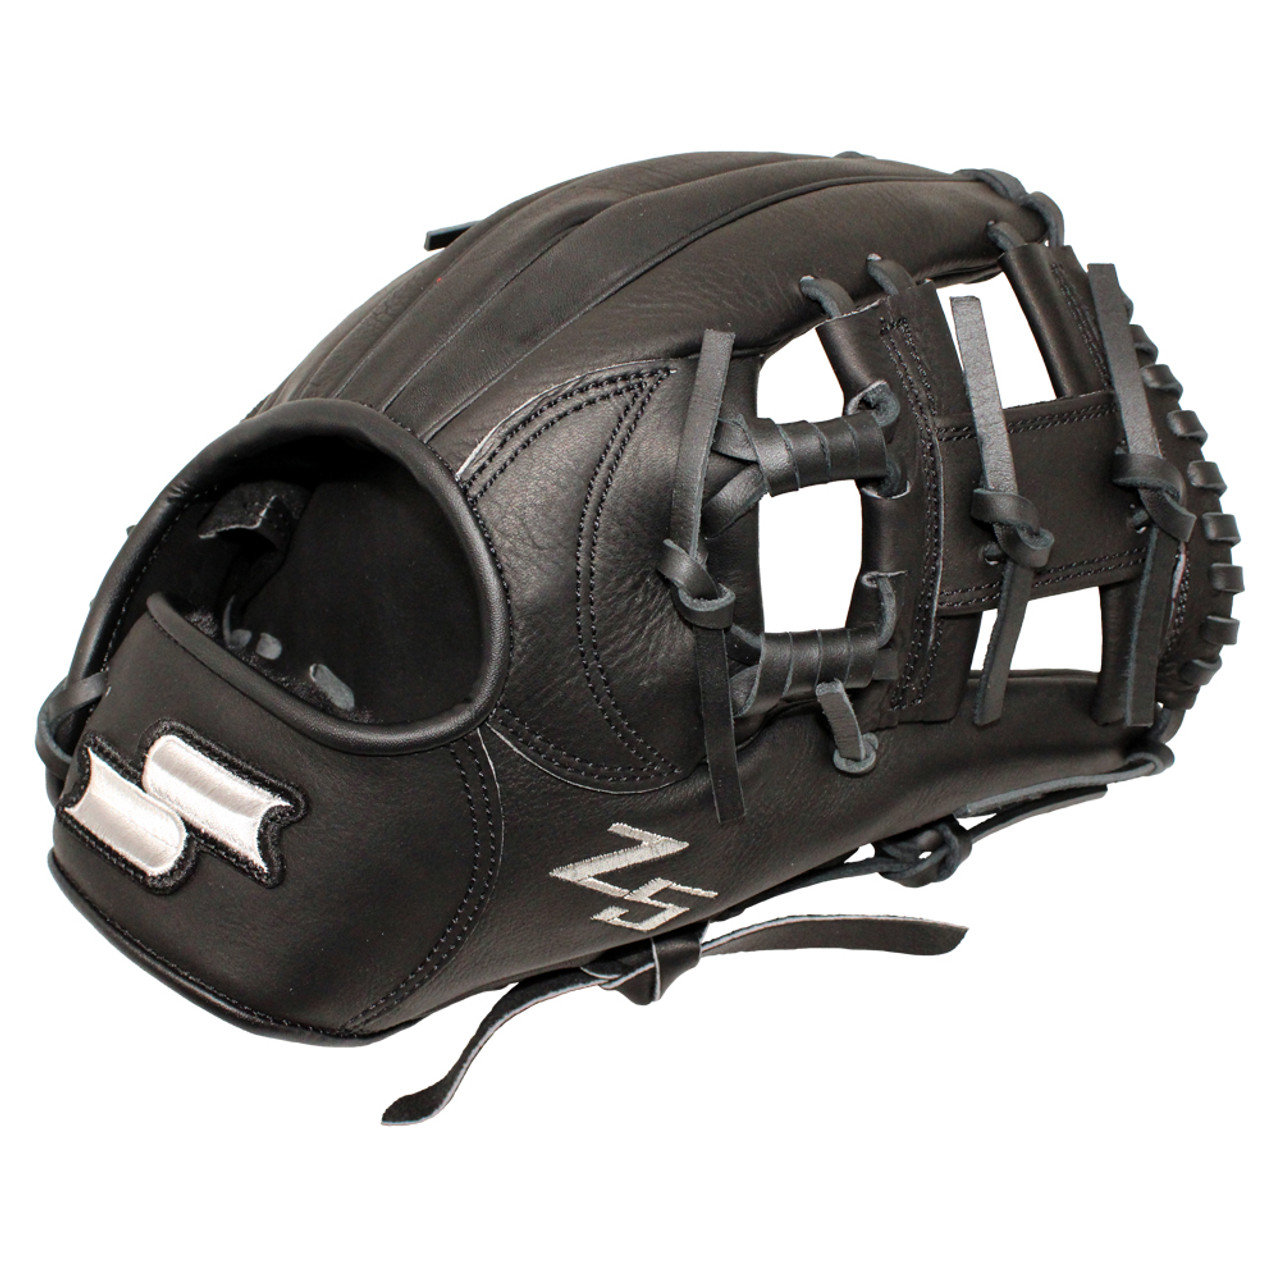 SSK Z5 Craftsman 11.75 Infield Baseball Glove Z5-1175CMLBLK4